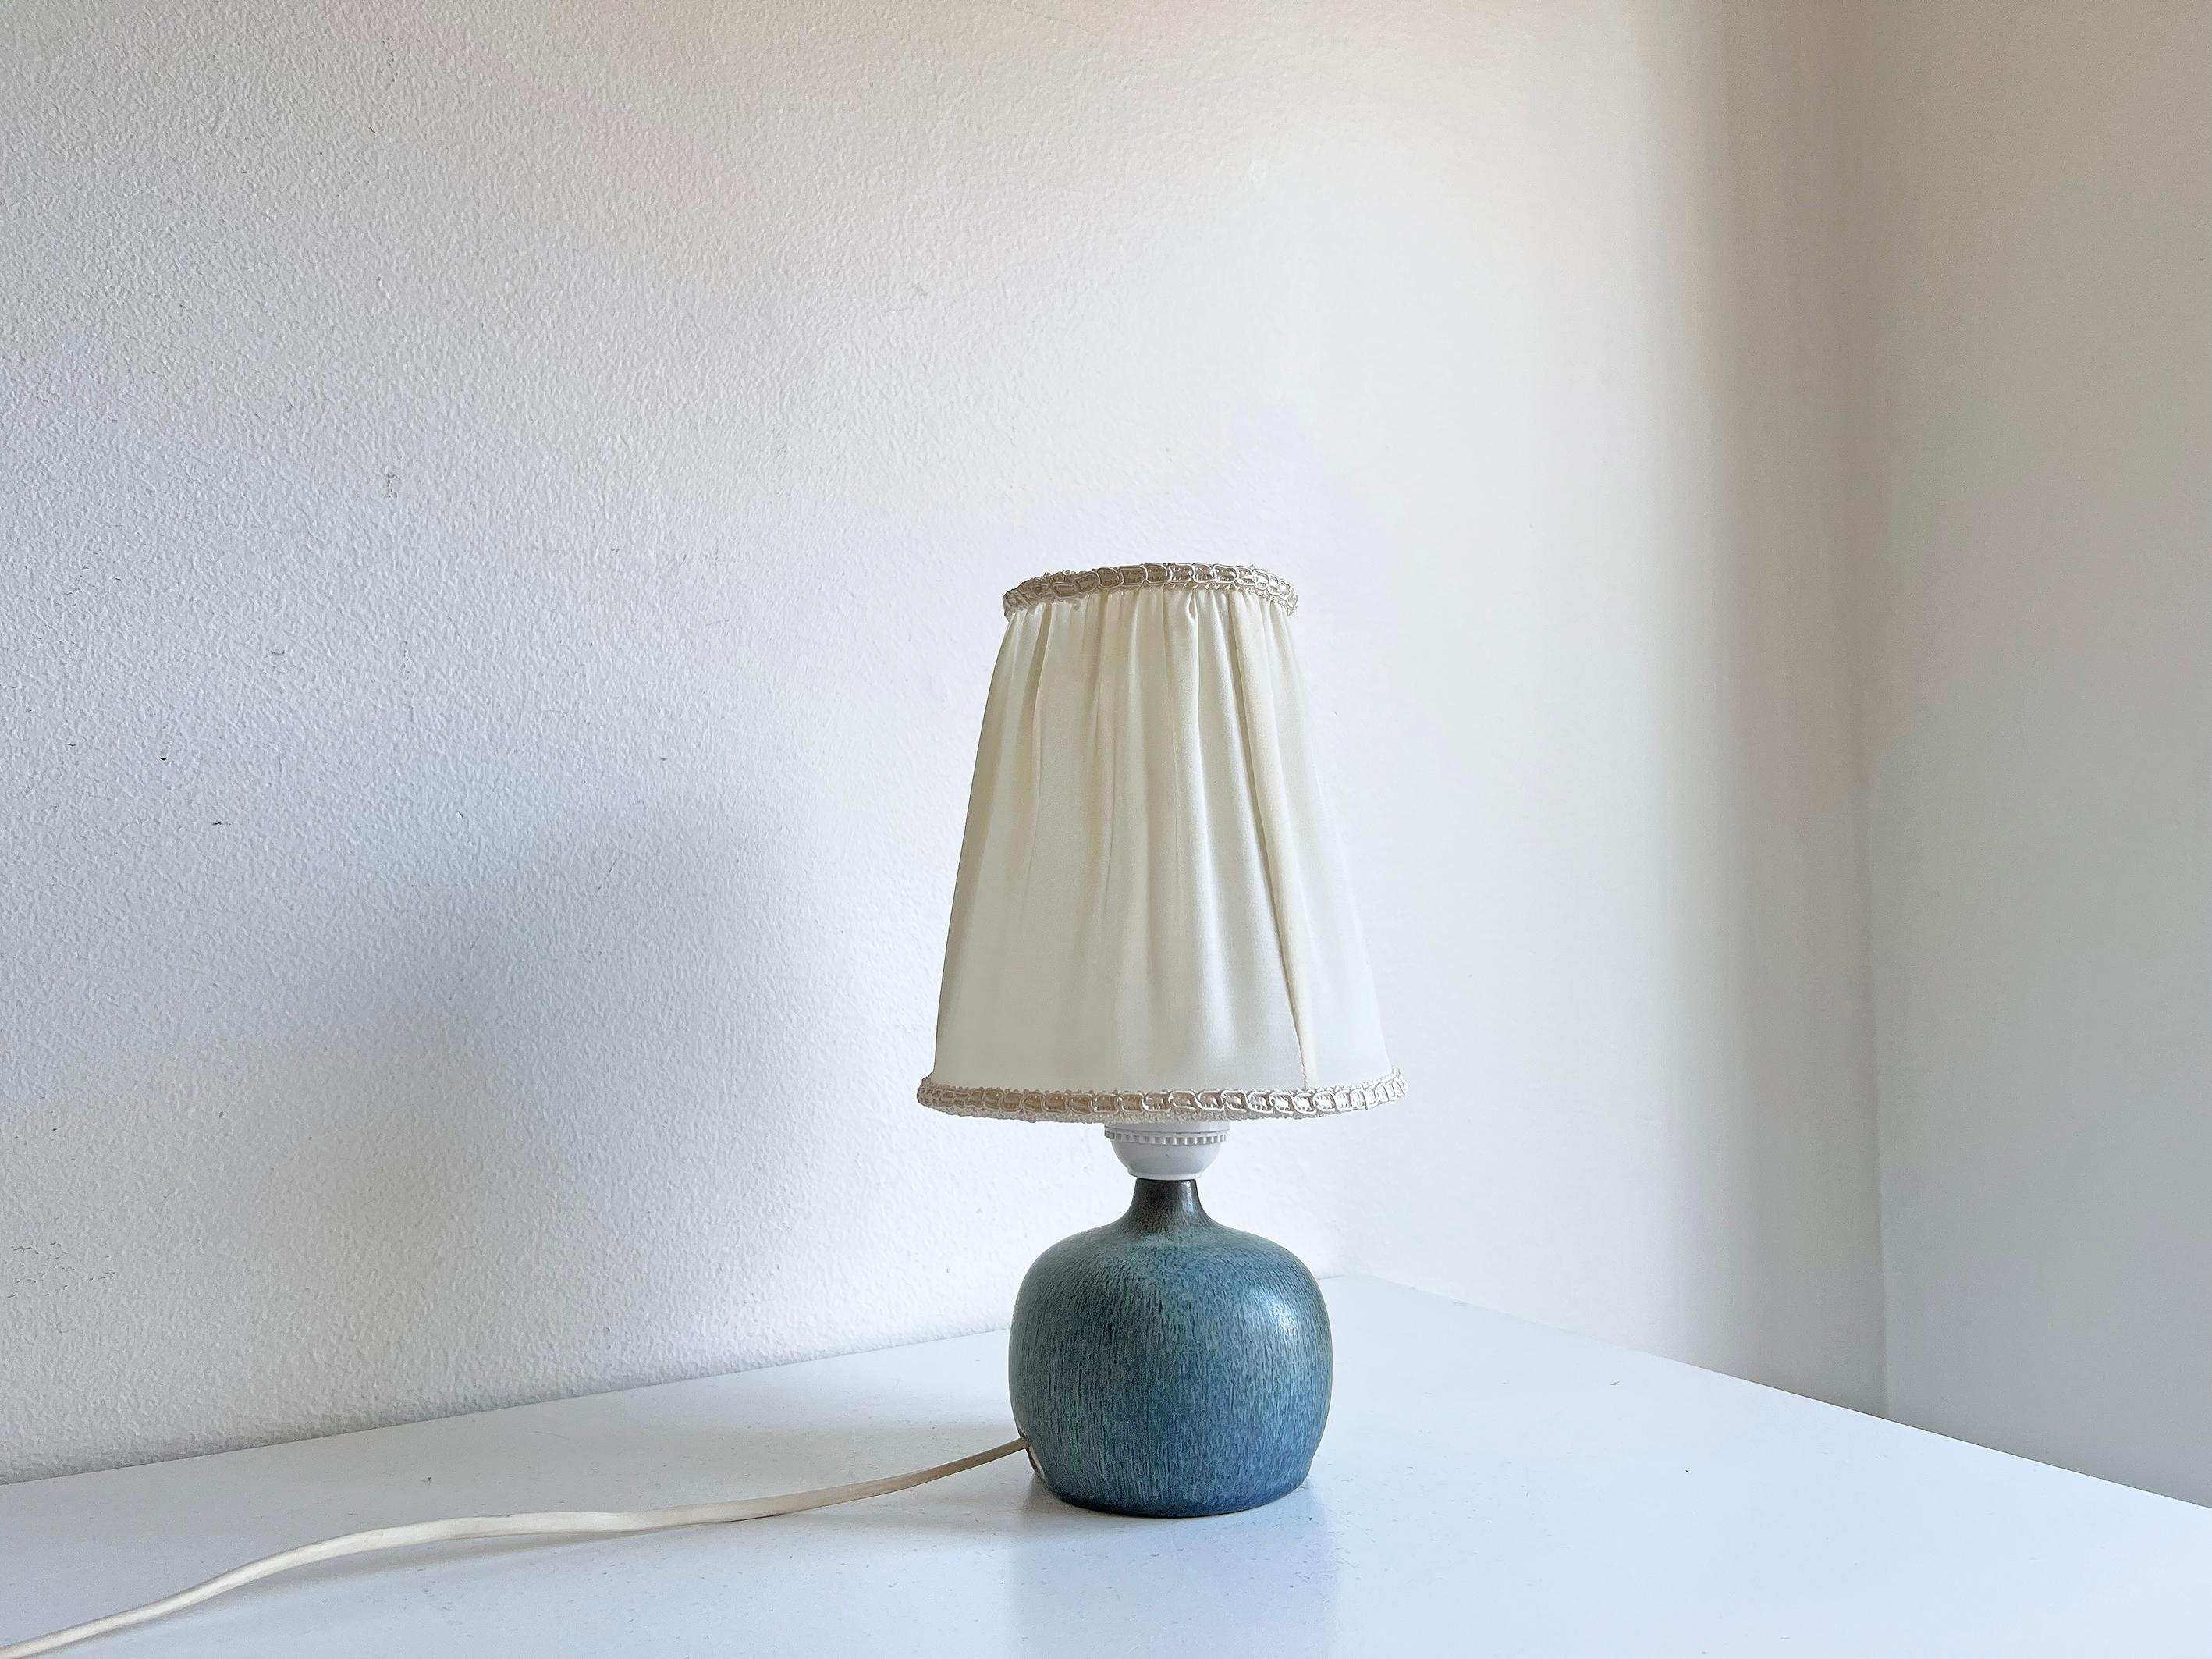 Élégante petite lampe de table en grès de Gunnar Nylund, produite en Suède par Rörstrand dans les années 1940-50.
L'abat-jour n'est pas inclus.